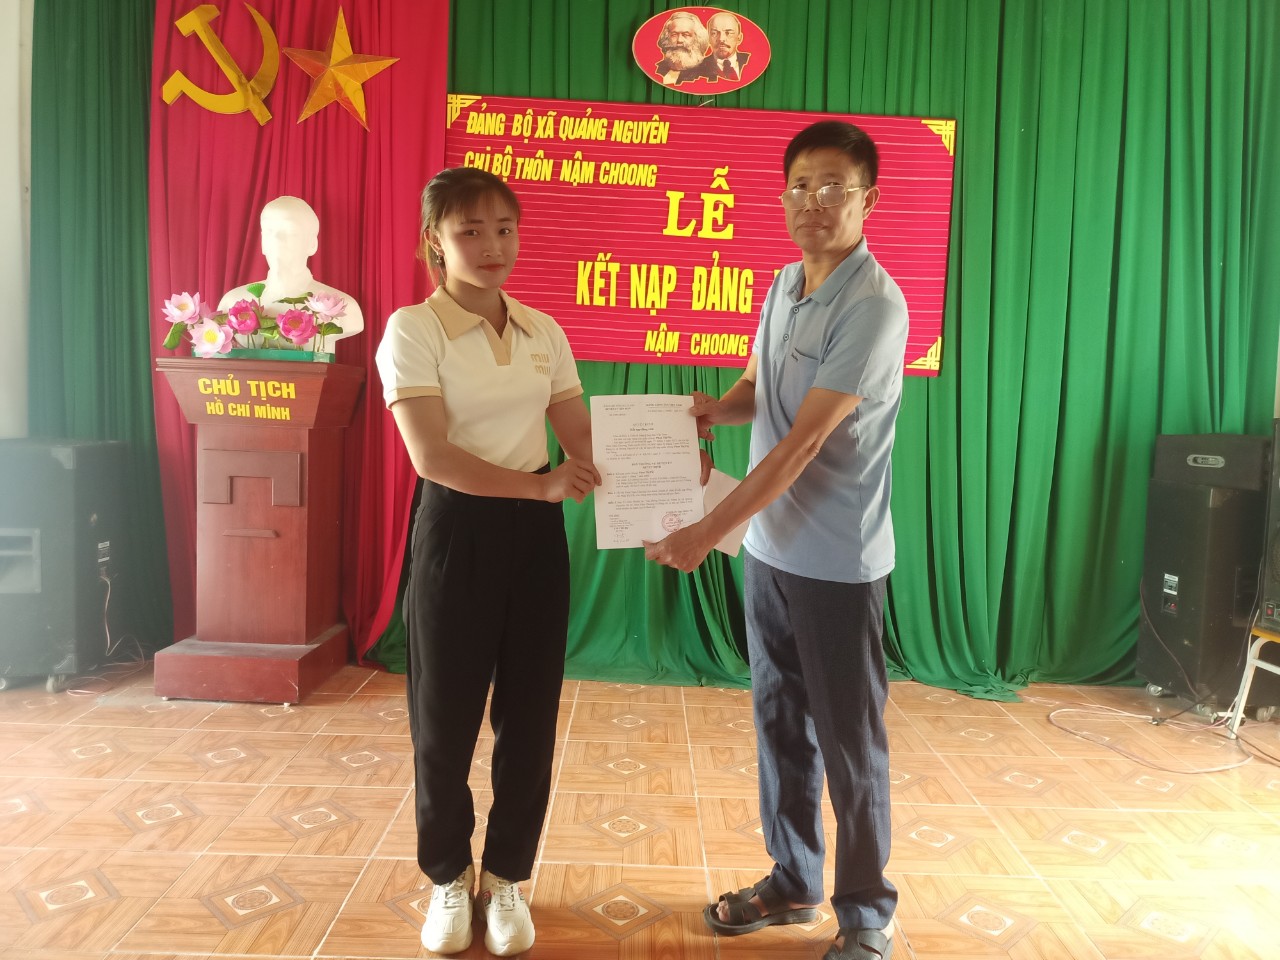 Chỉ bộ thôn Nậm Choong xã Quảng Nguyên tổ chức Lễ kết nạp đảng viên mới